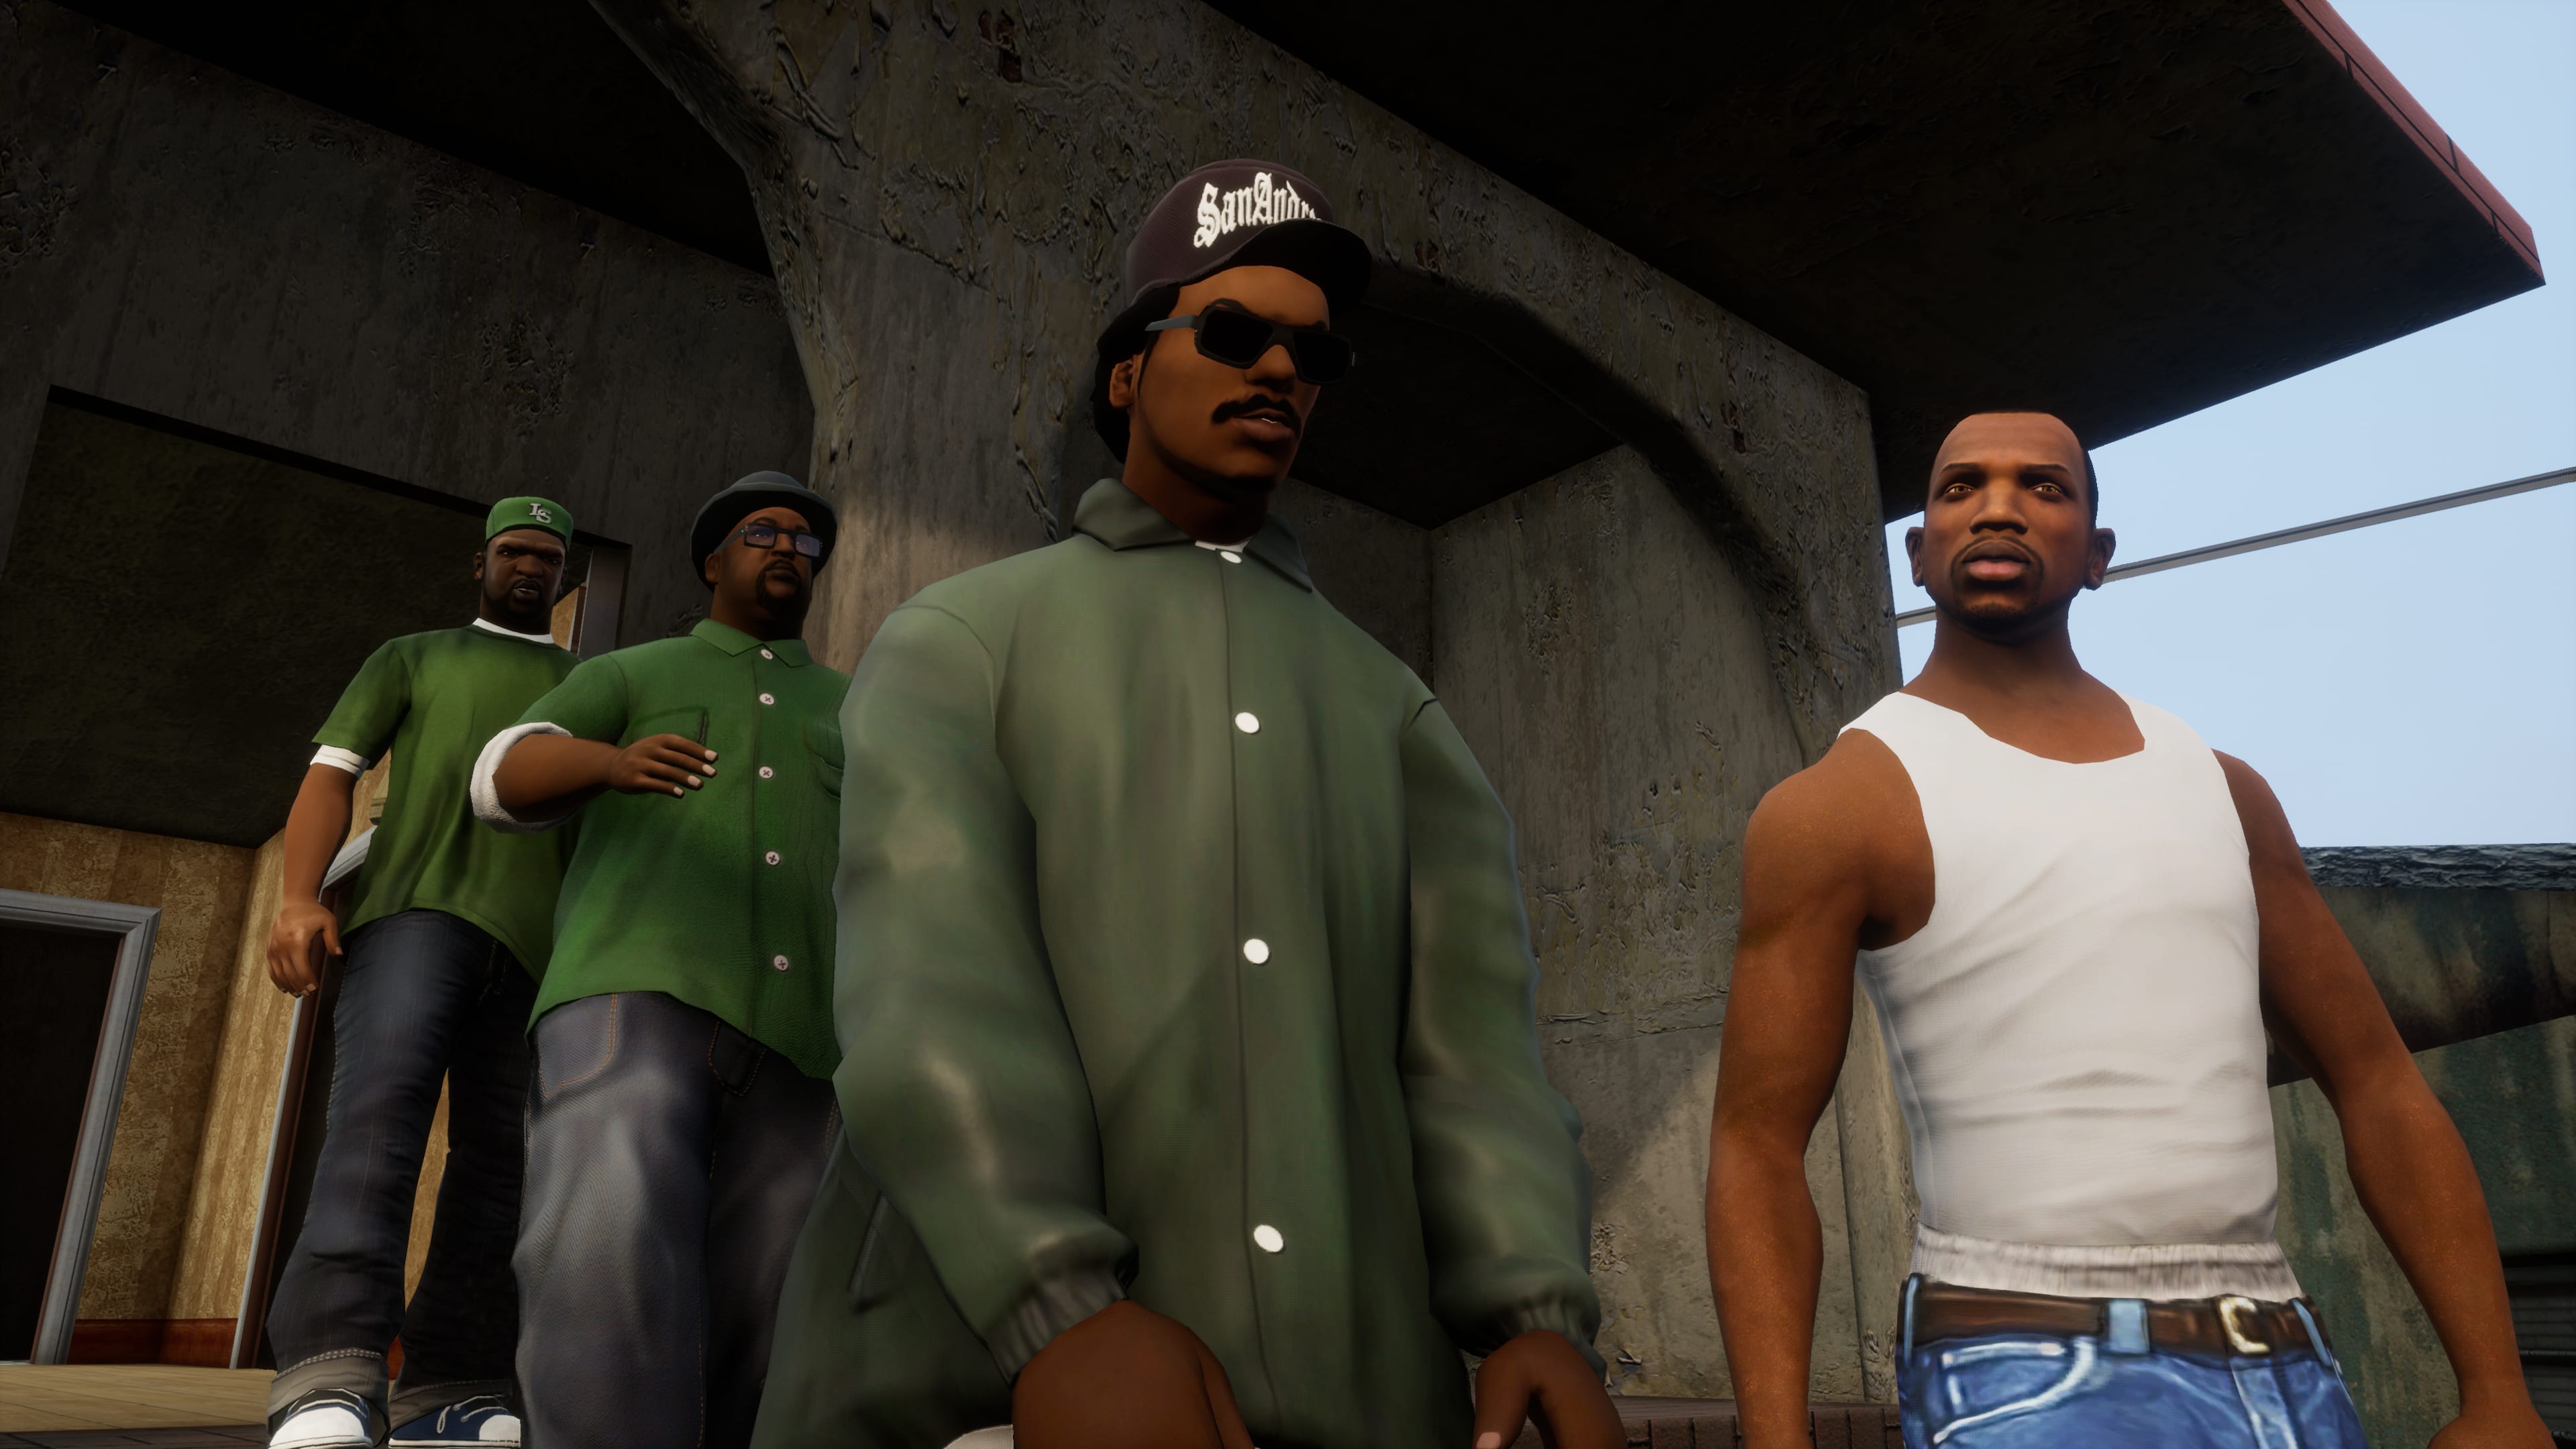 Los personajes se unen en la edición remasterizada de Grand Theft Auto: San Andreas.